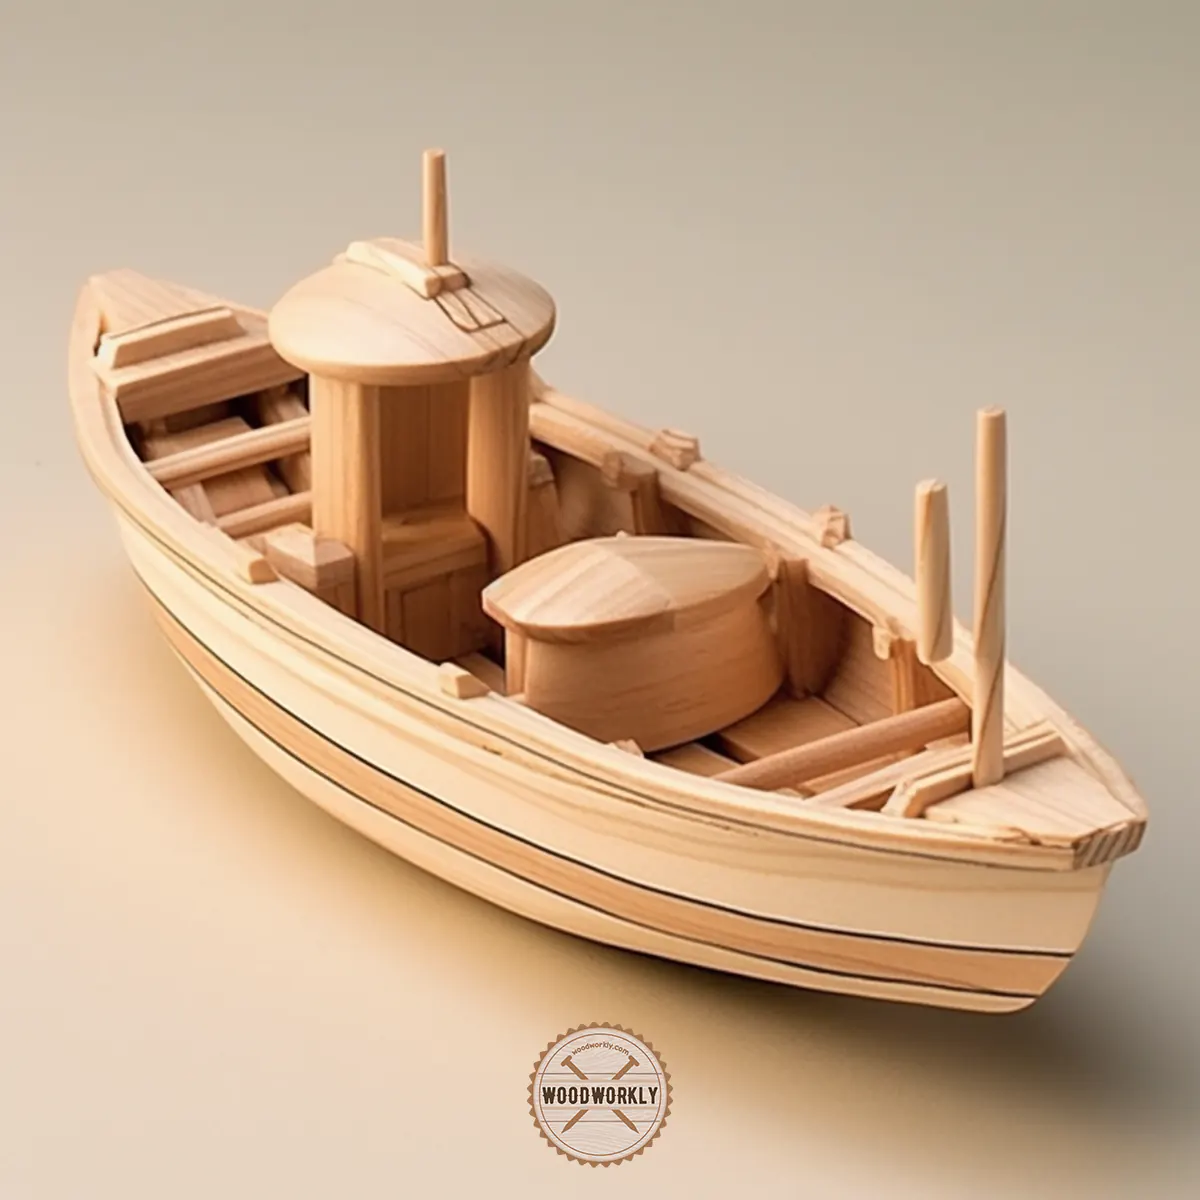 Balsa wood boat